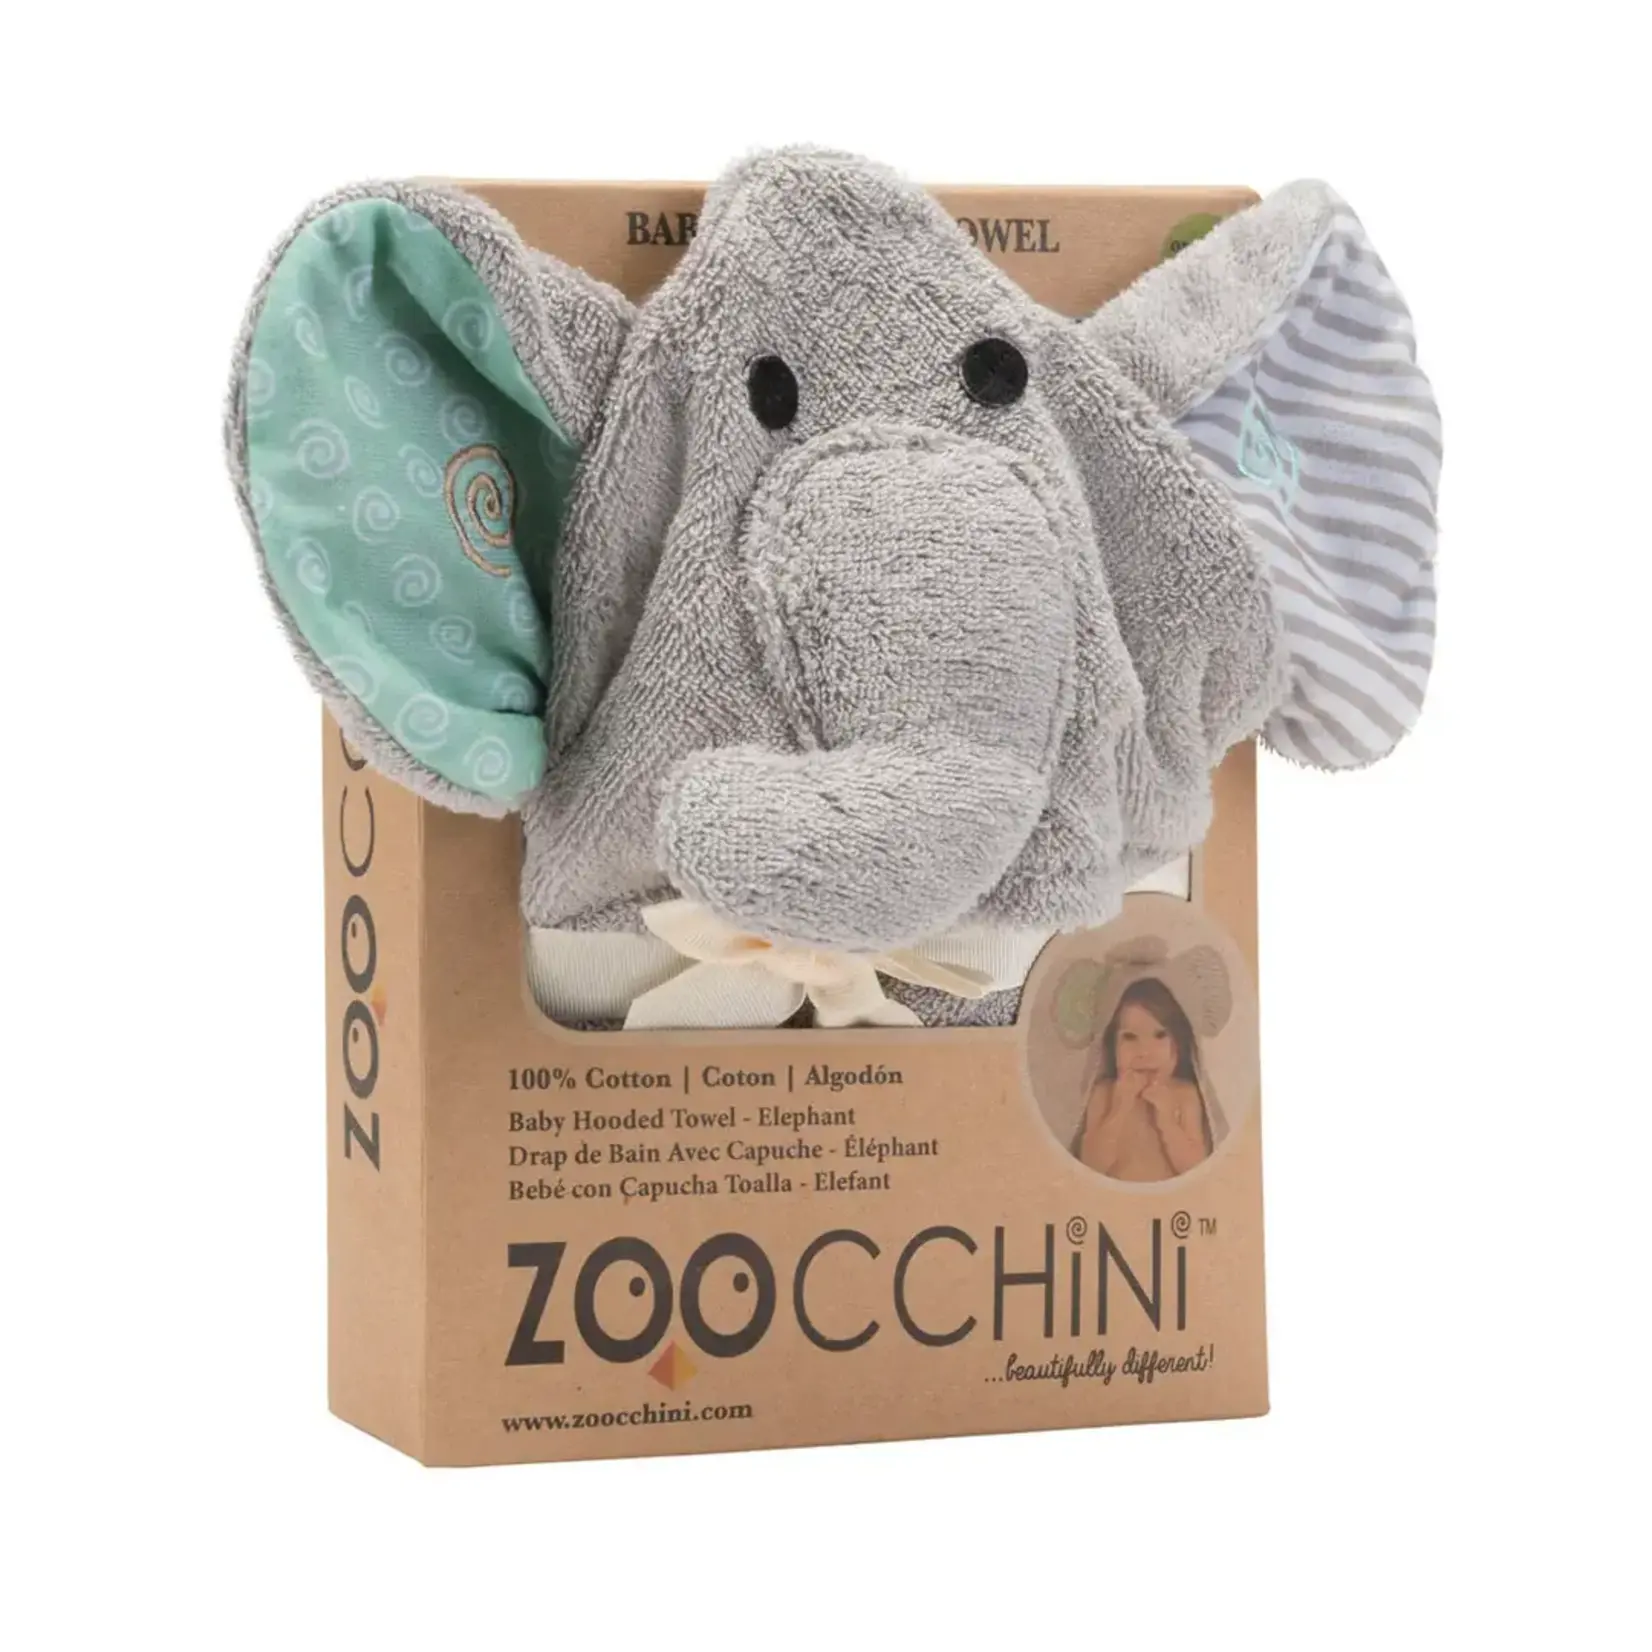 Zoocchini Baby Towel Elephant